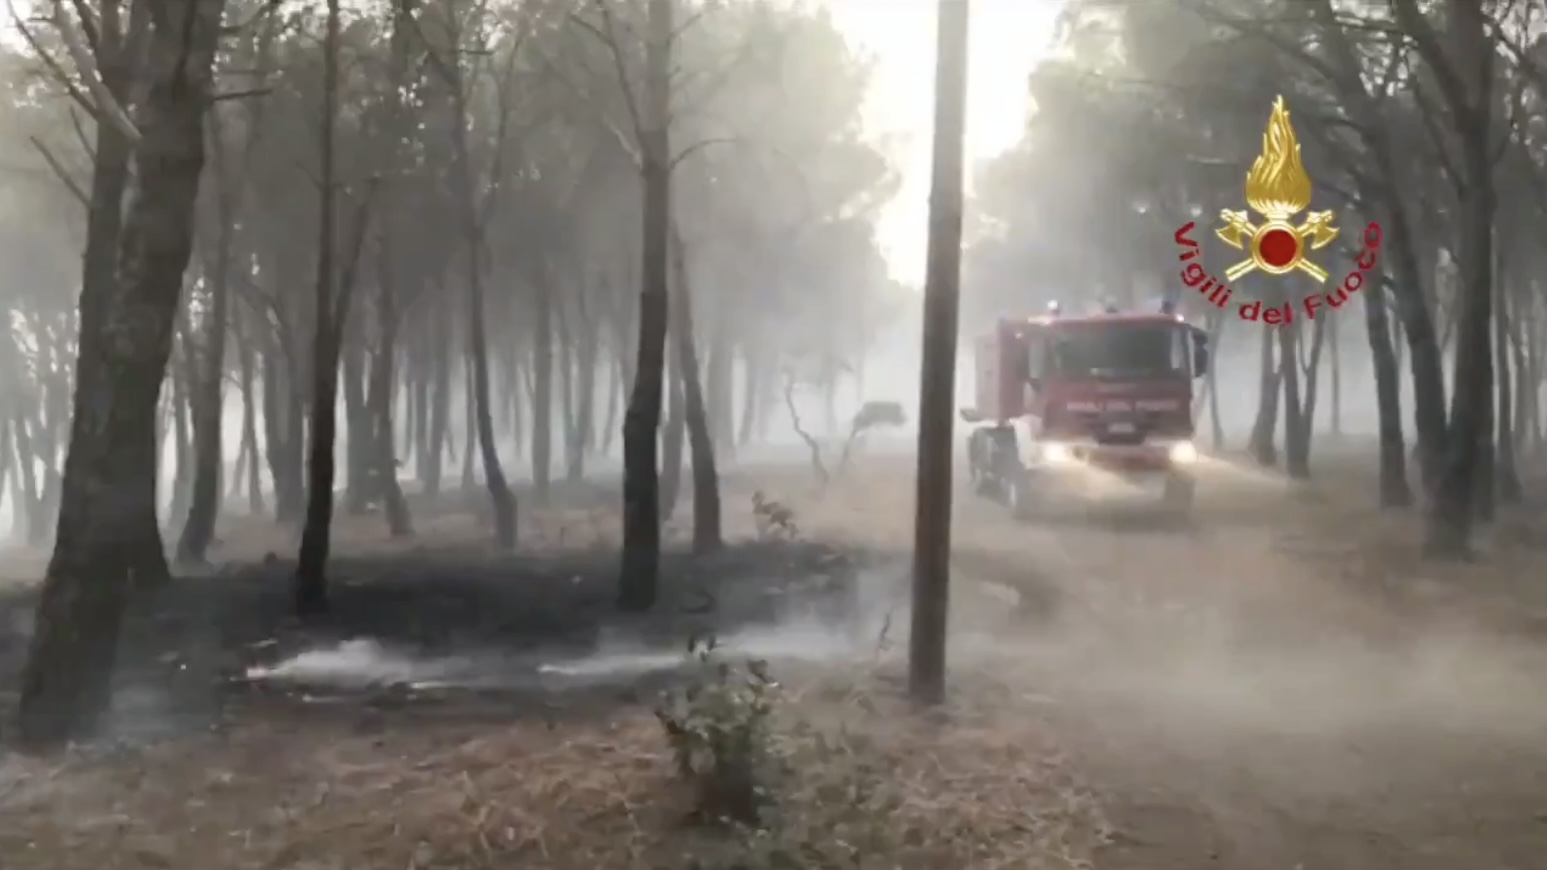 Incendi boschivi nell'oristanese: 400 persone evacuate